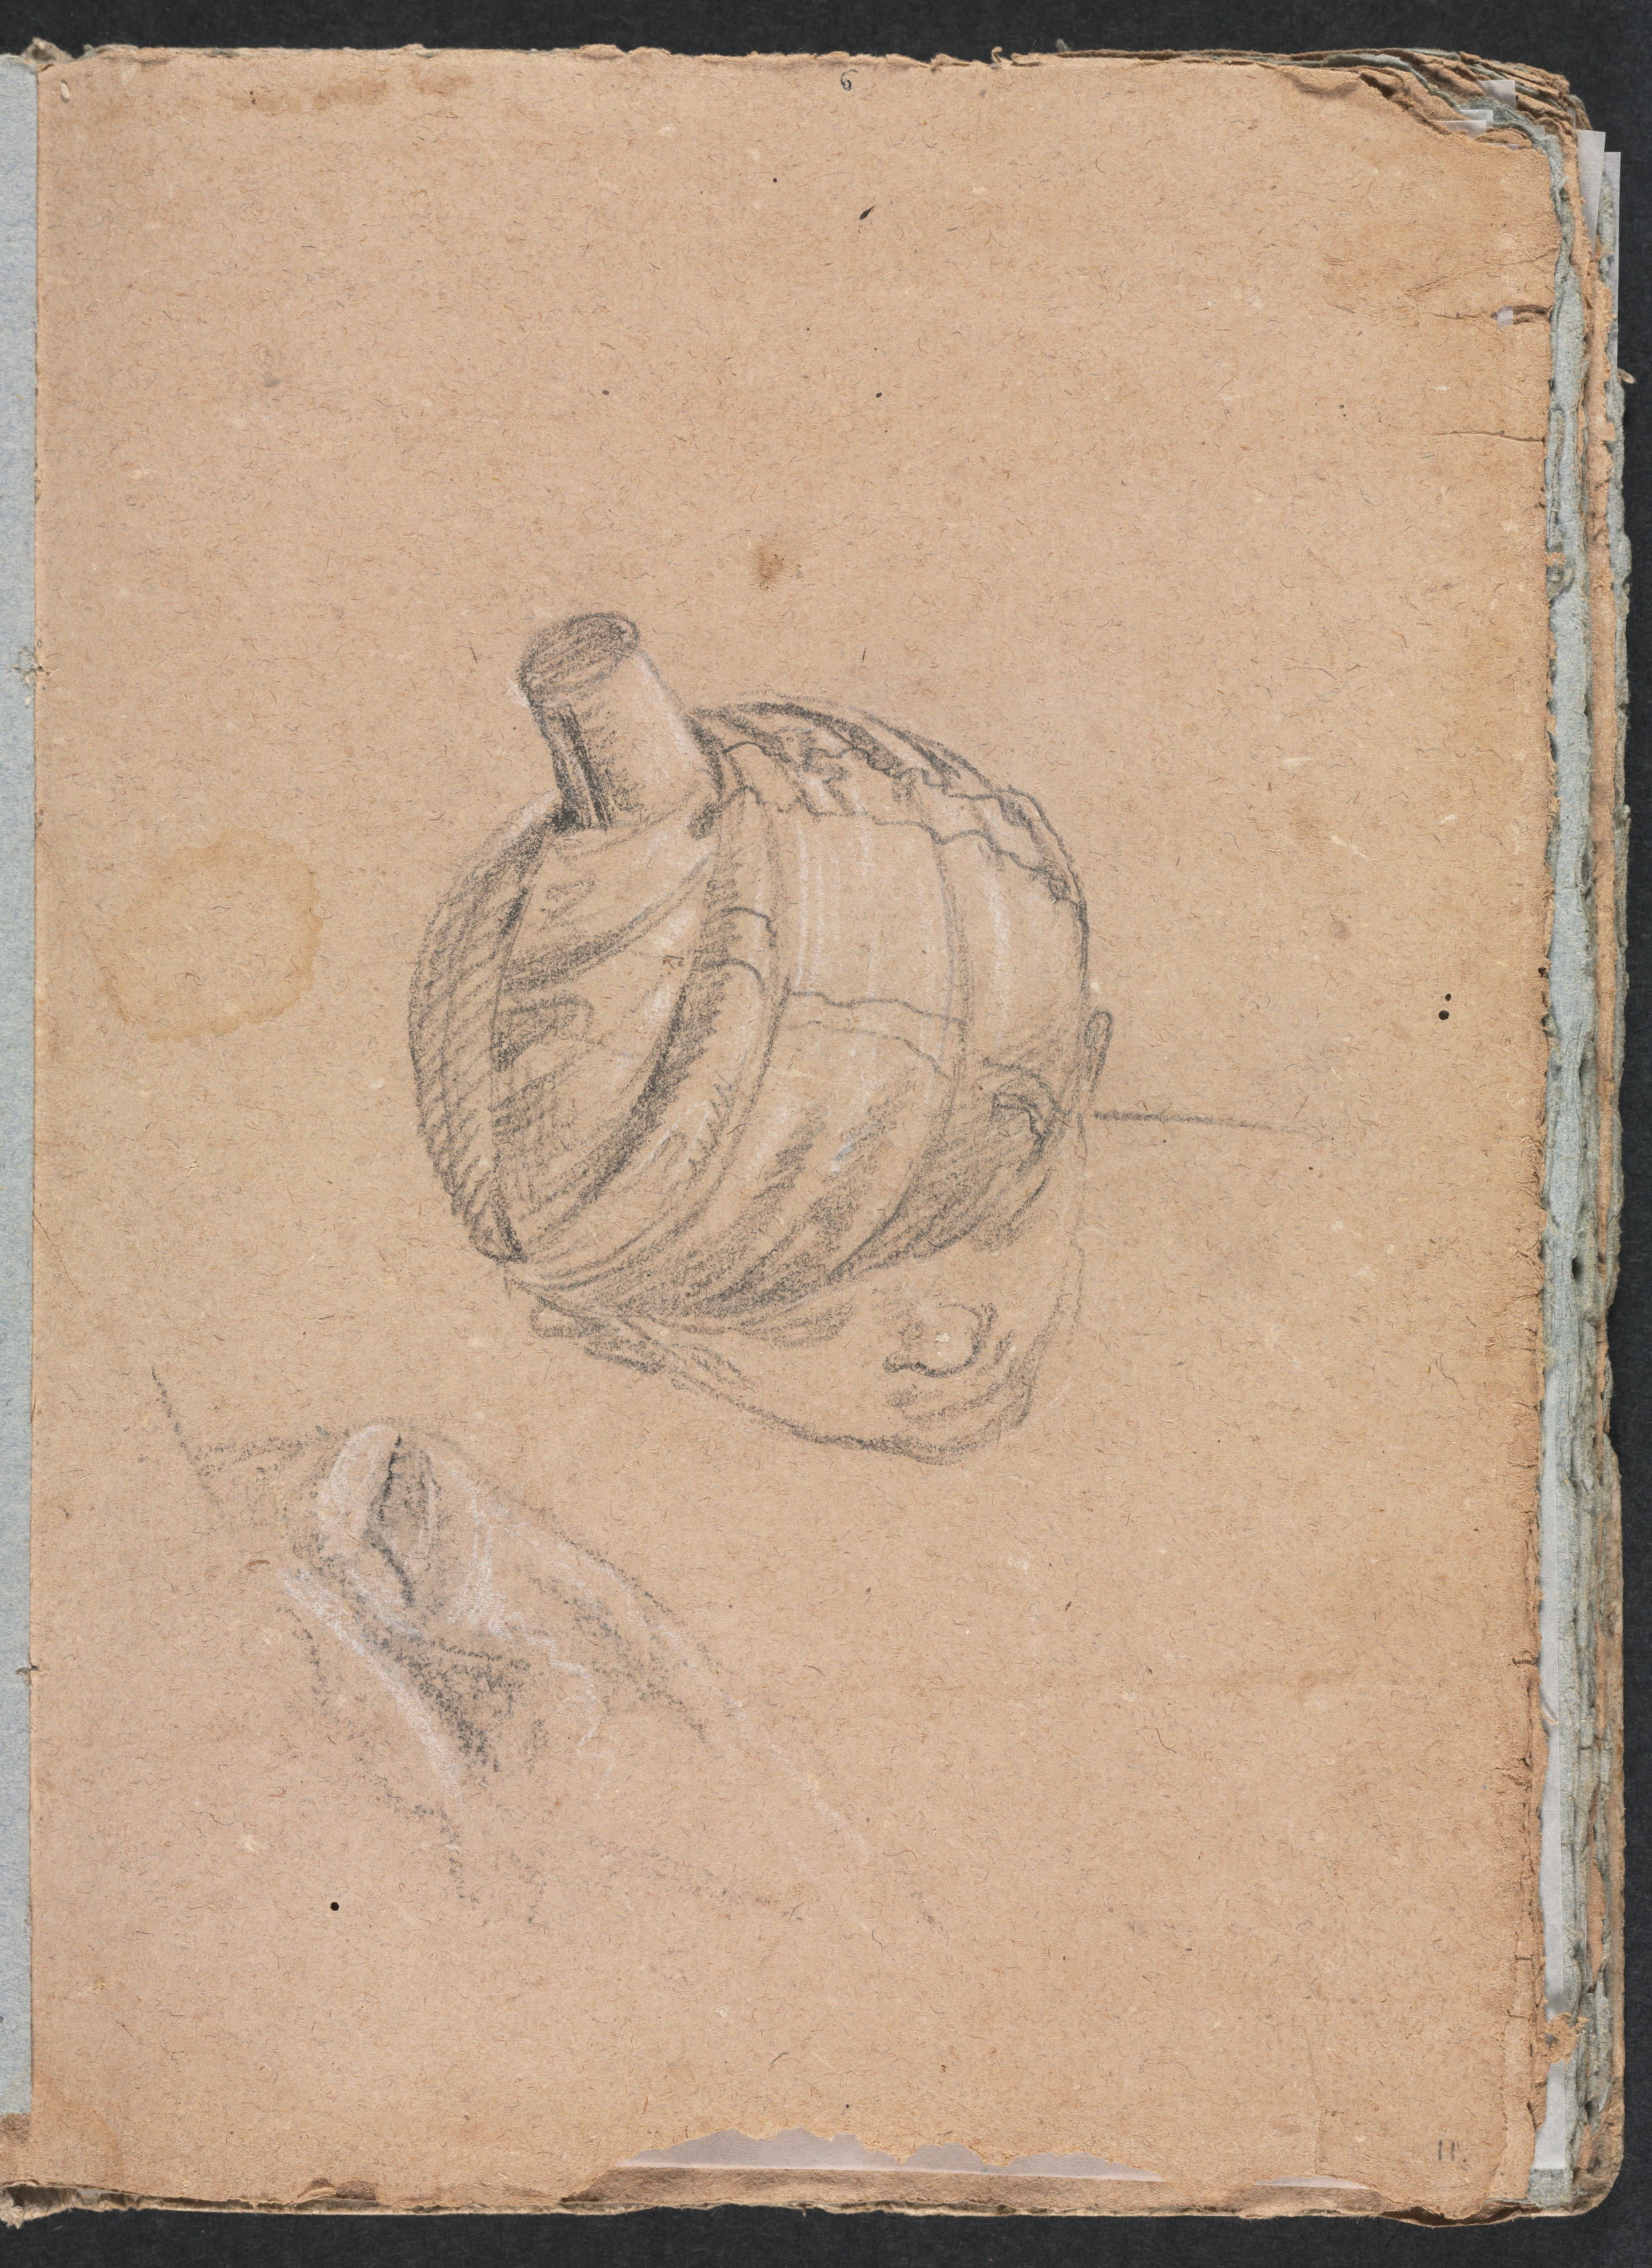 Verona Sketchbook: Head with turban (page 11)